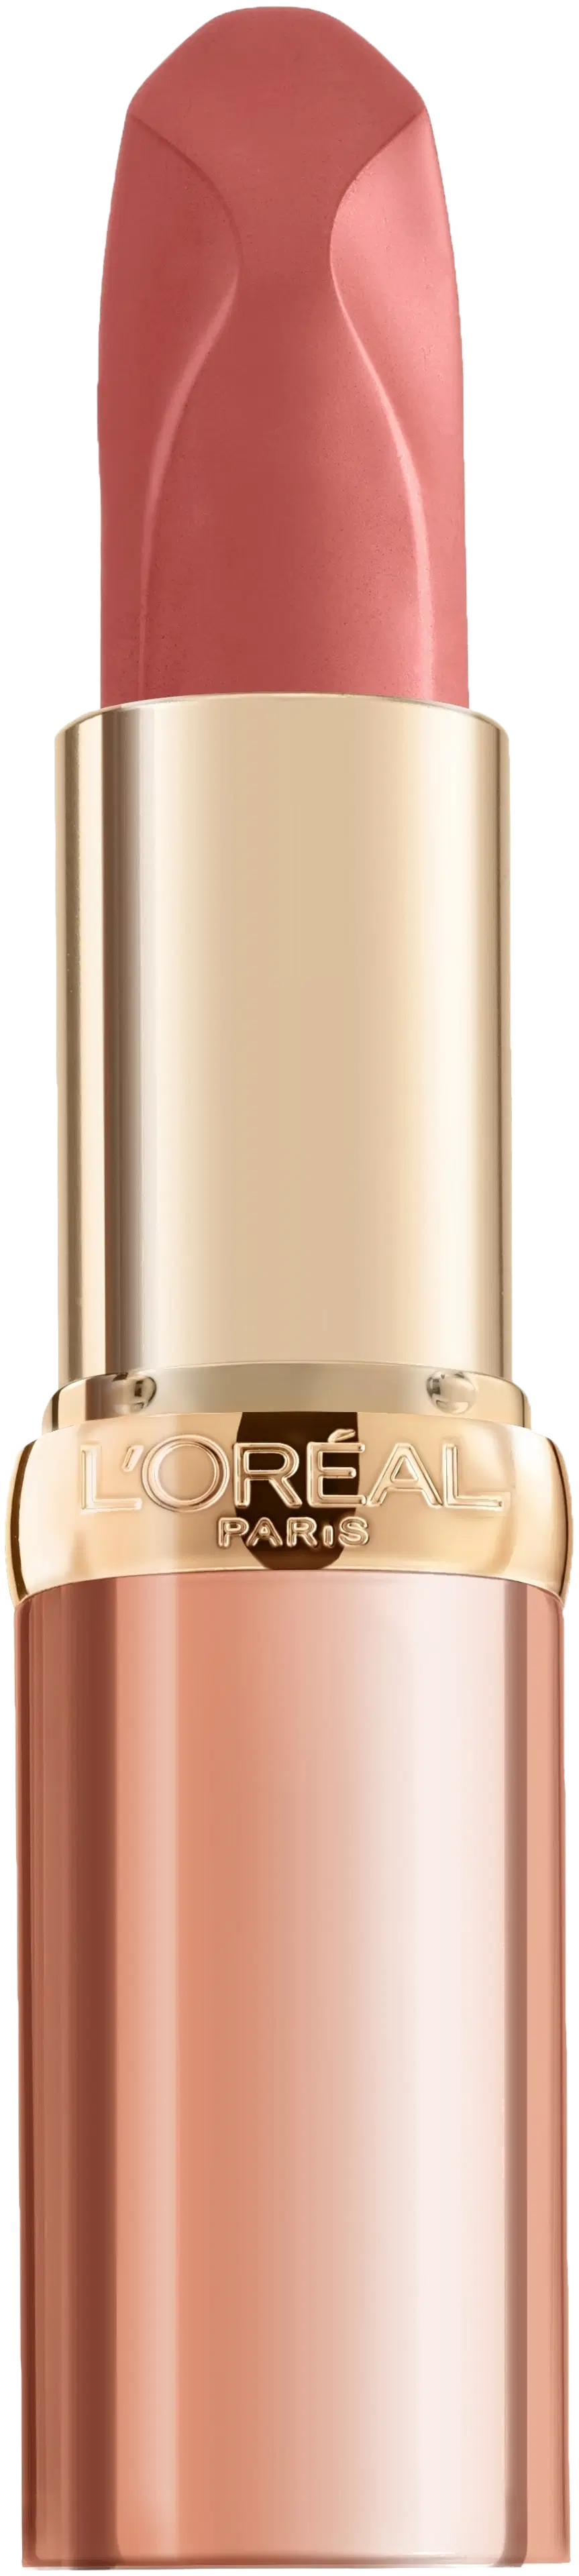 L'Oréal Paris Color Riche Nudes Insolent 173 Nu Impertanent -huulipuna 4,5 g